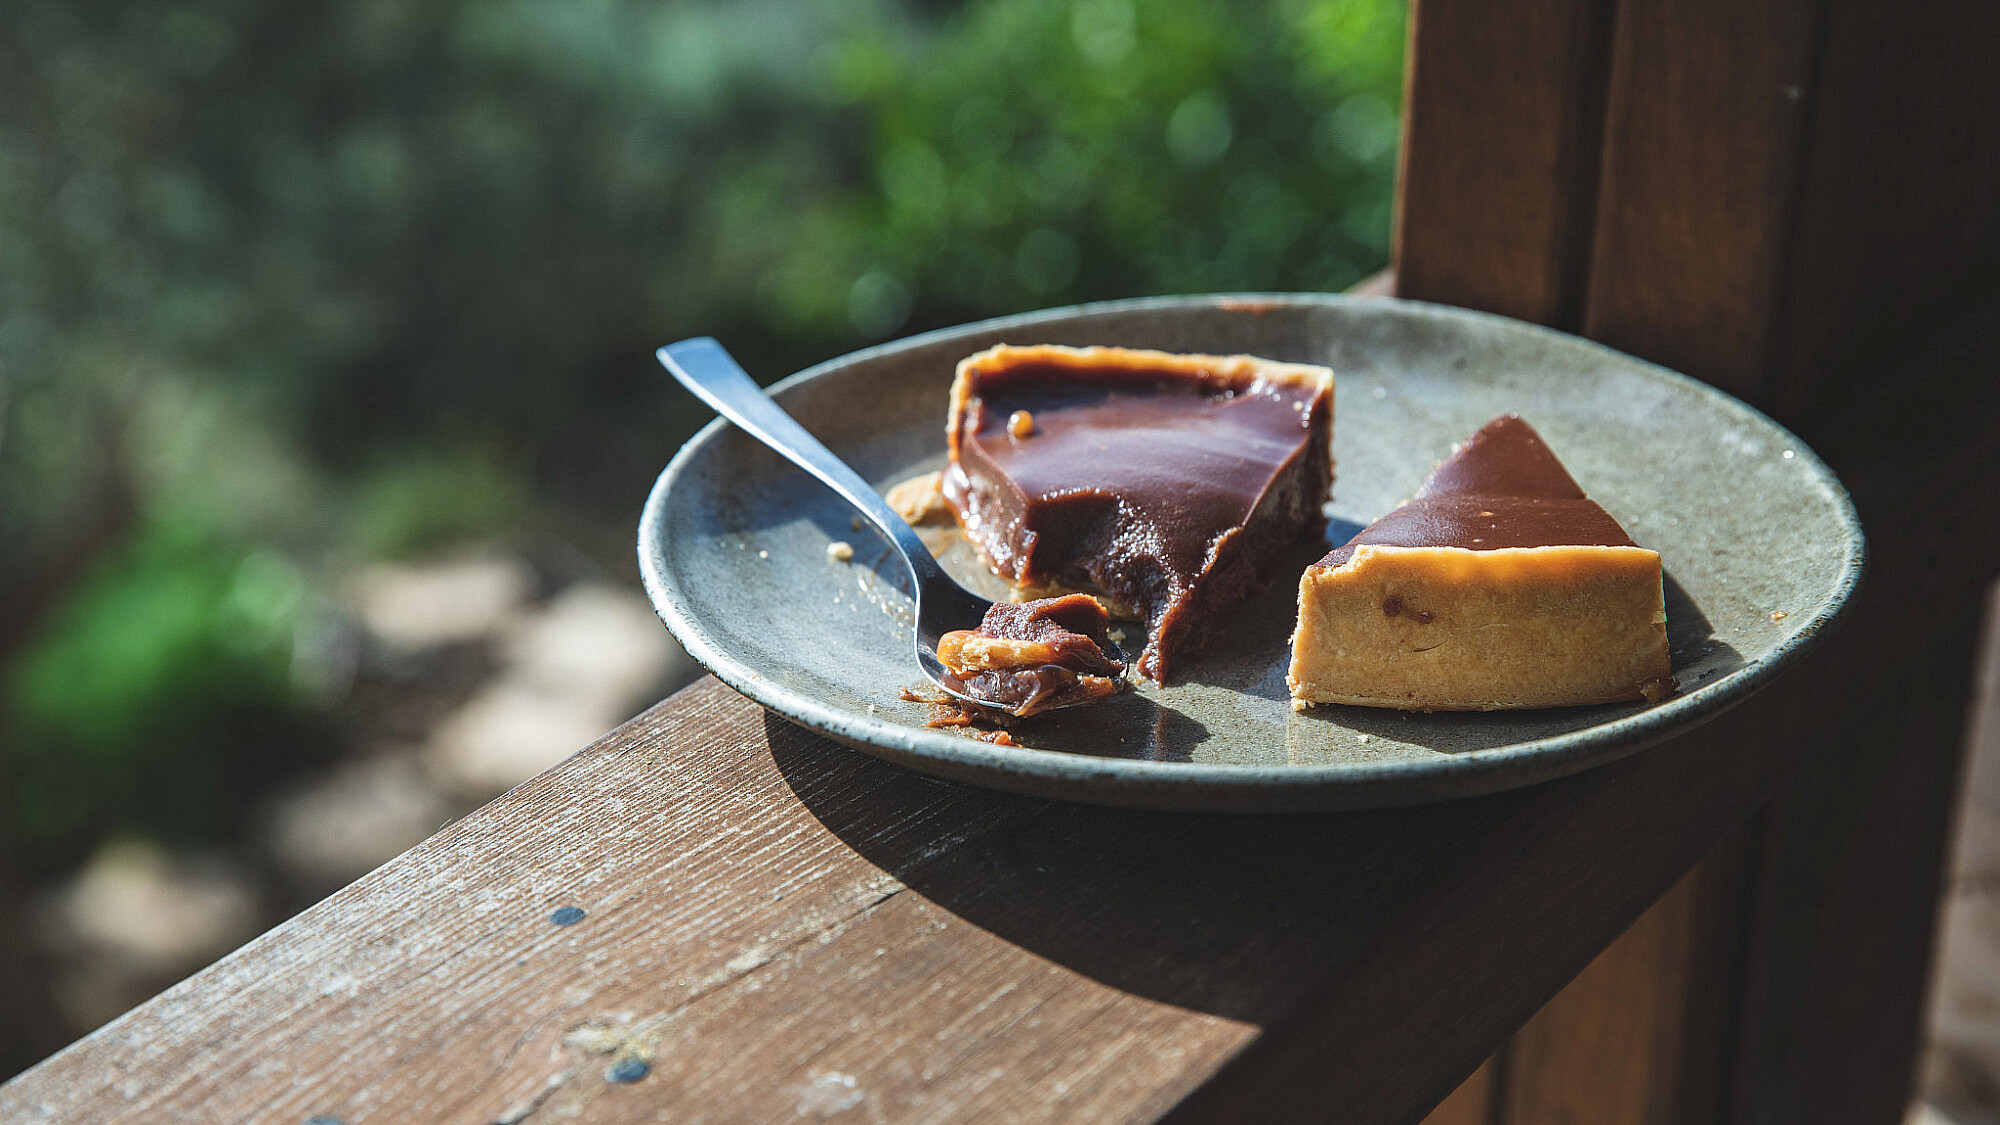 טארט שוקולד ושמן זית של שף־קונדיטורית נועה חיים | צילום: שני בריל